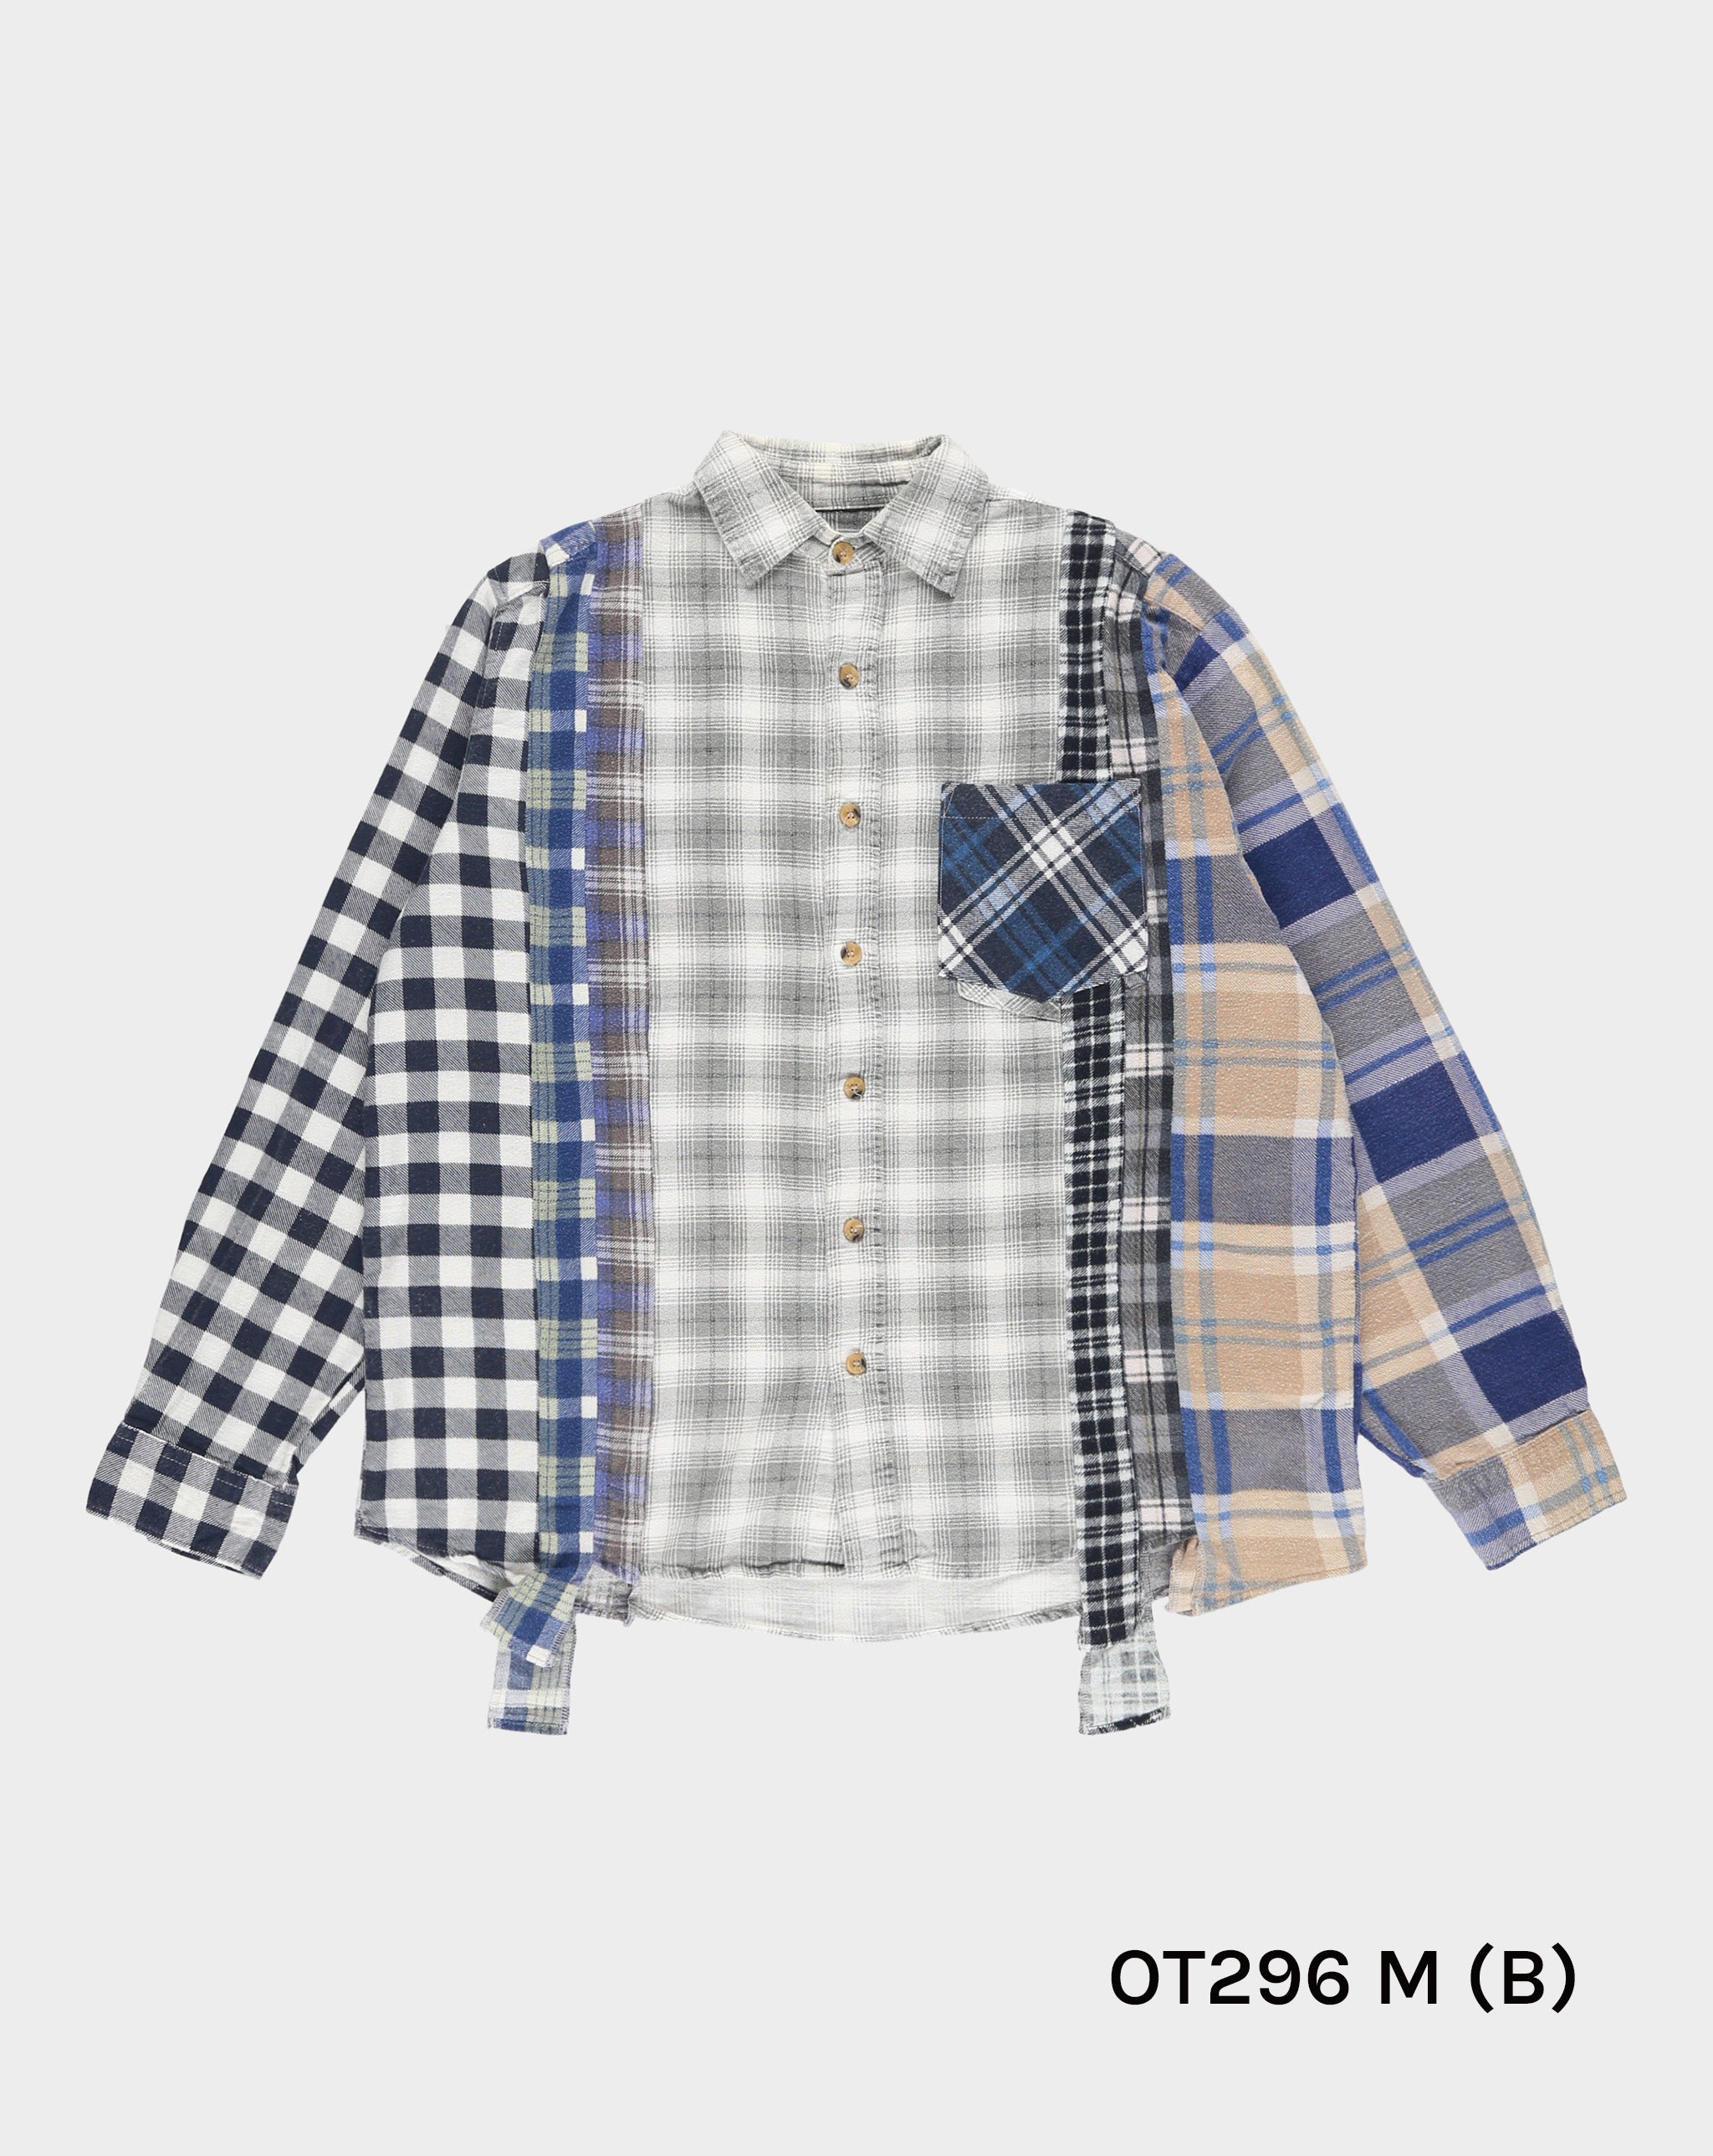 Needles 7 Cuts Flannel Shirt  - Cheap 127-0 Jordan outlet